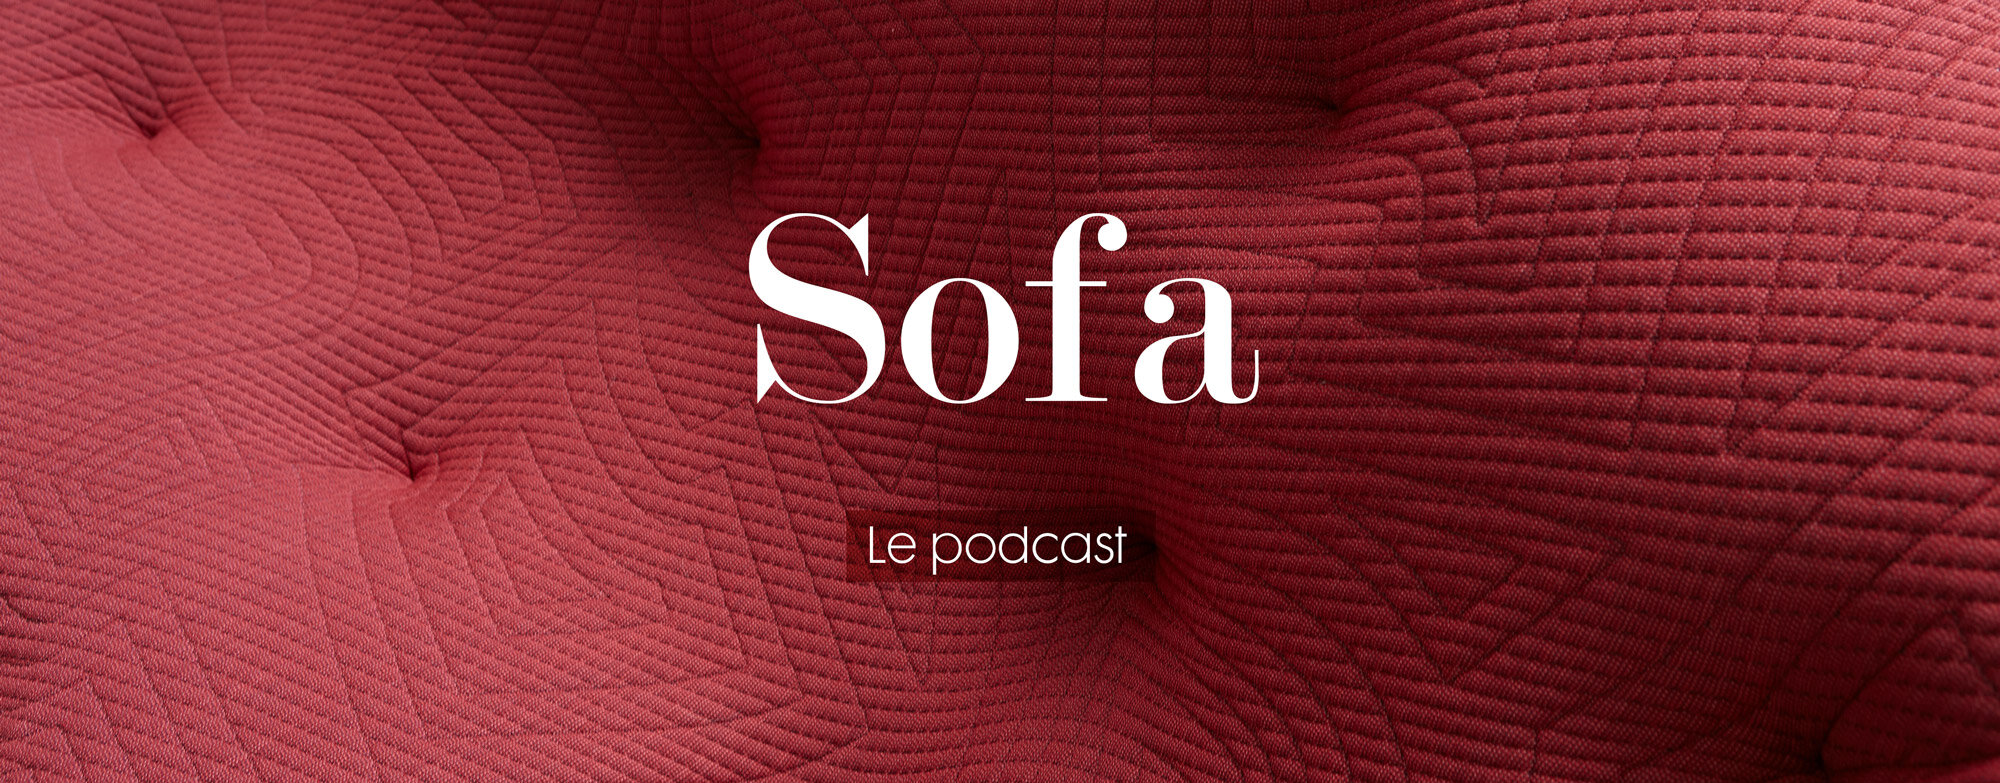 Image haut de page Podcast Sofa